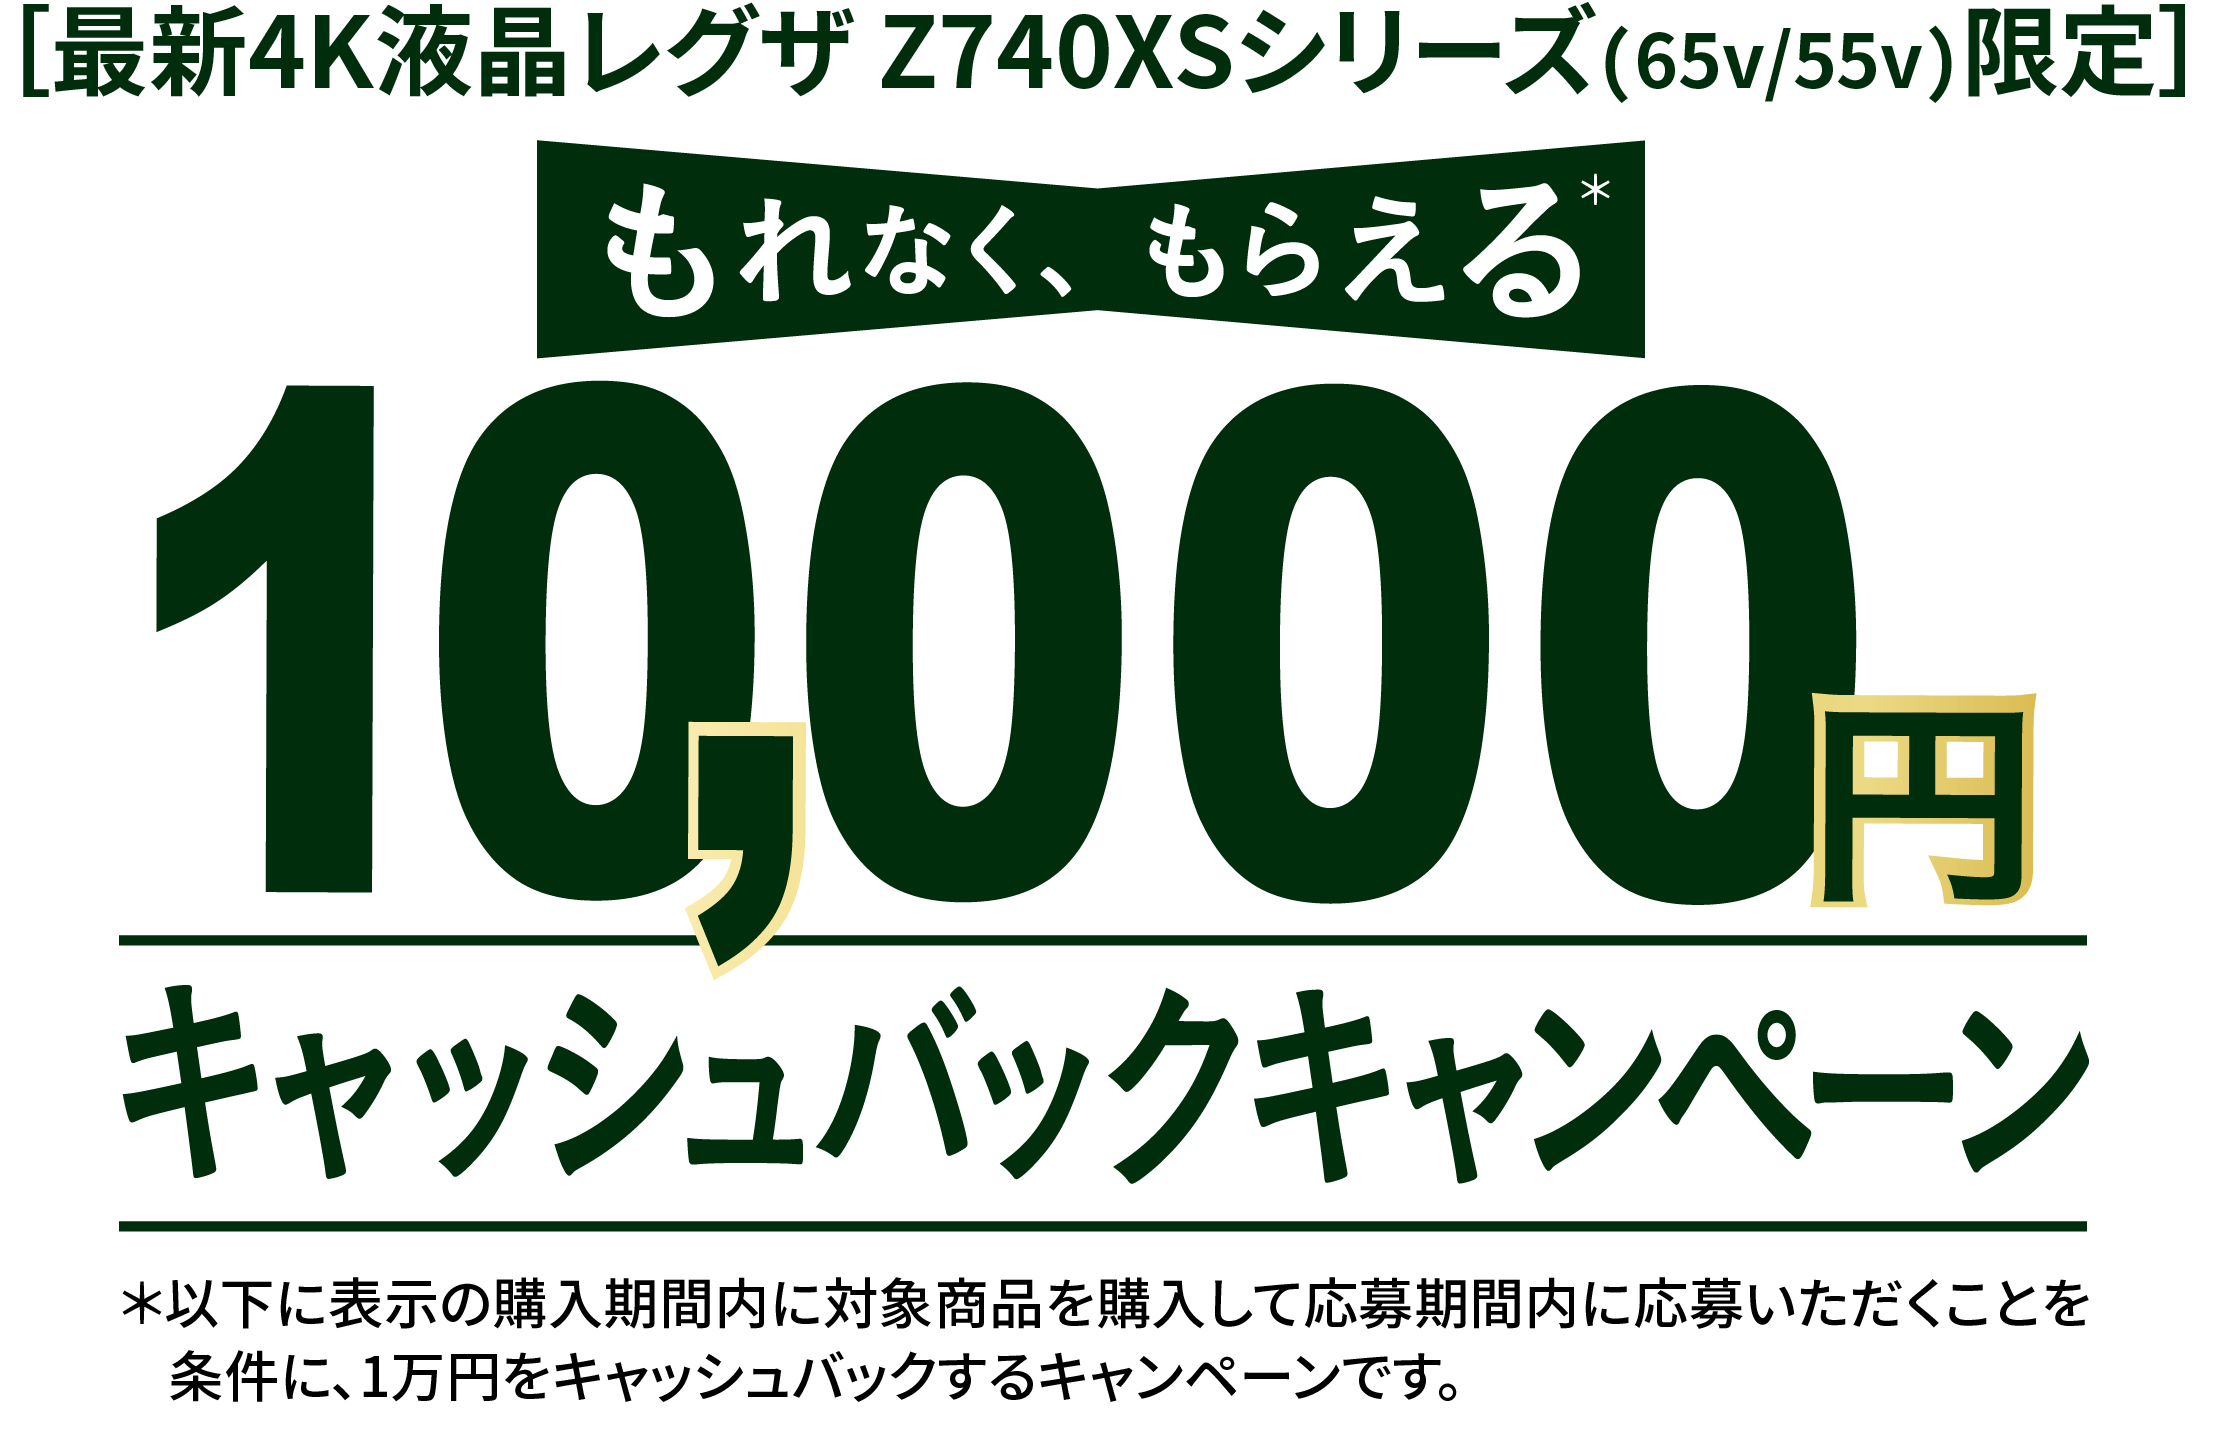 ［最新4K液晶レグザ Z740XSシリーズ(65v/55v)限定］ もれなく、もらえる 10,000円 キャッシュバックキャンペーン